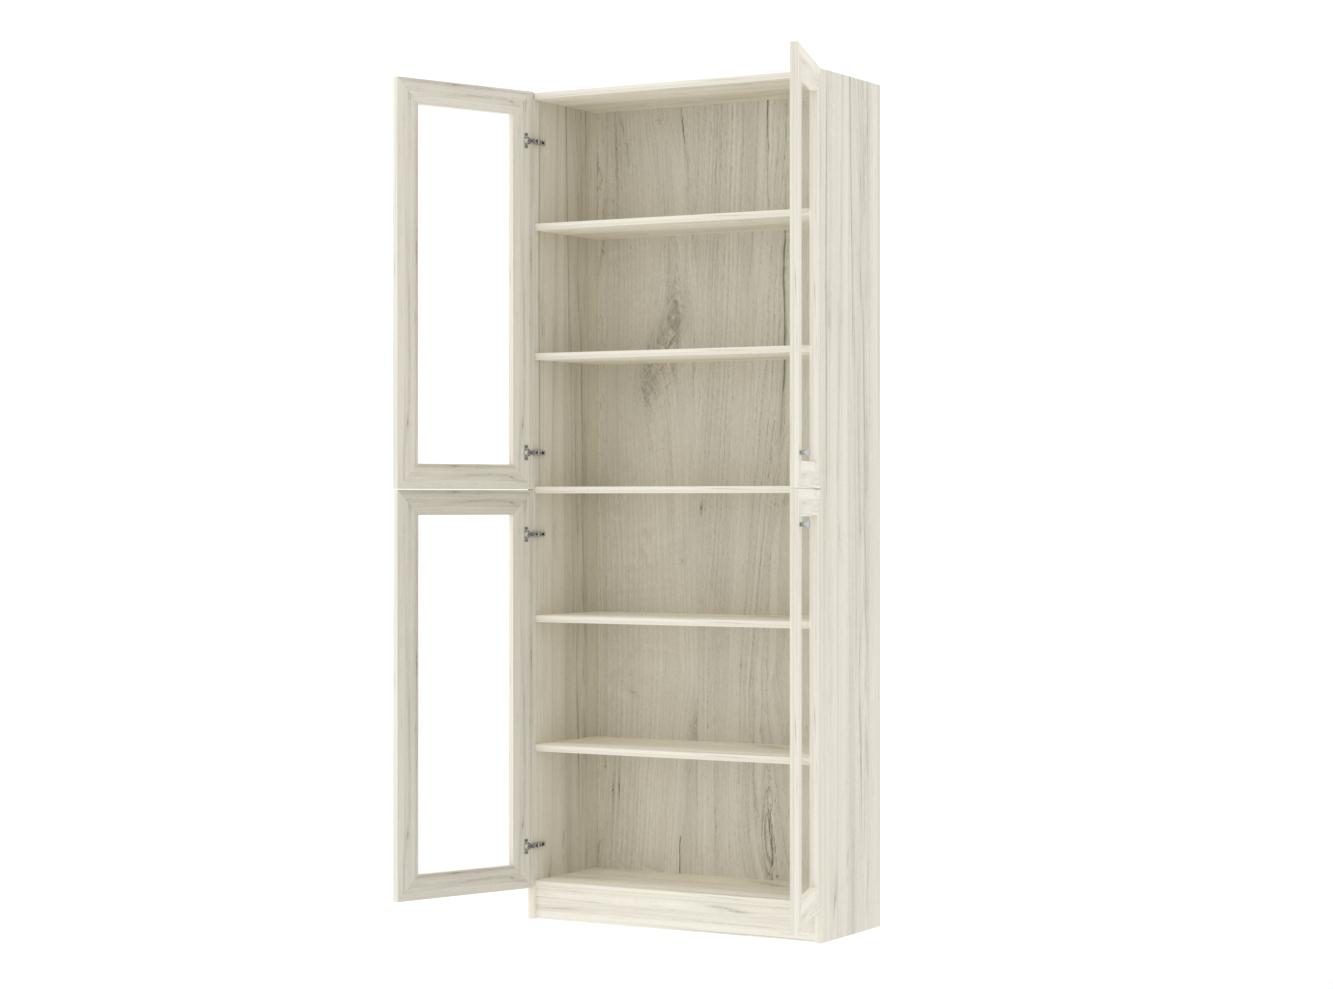 Книжный шкаф Билли 335 oak white craft ИКЕА (IKEA) изображение товара